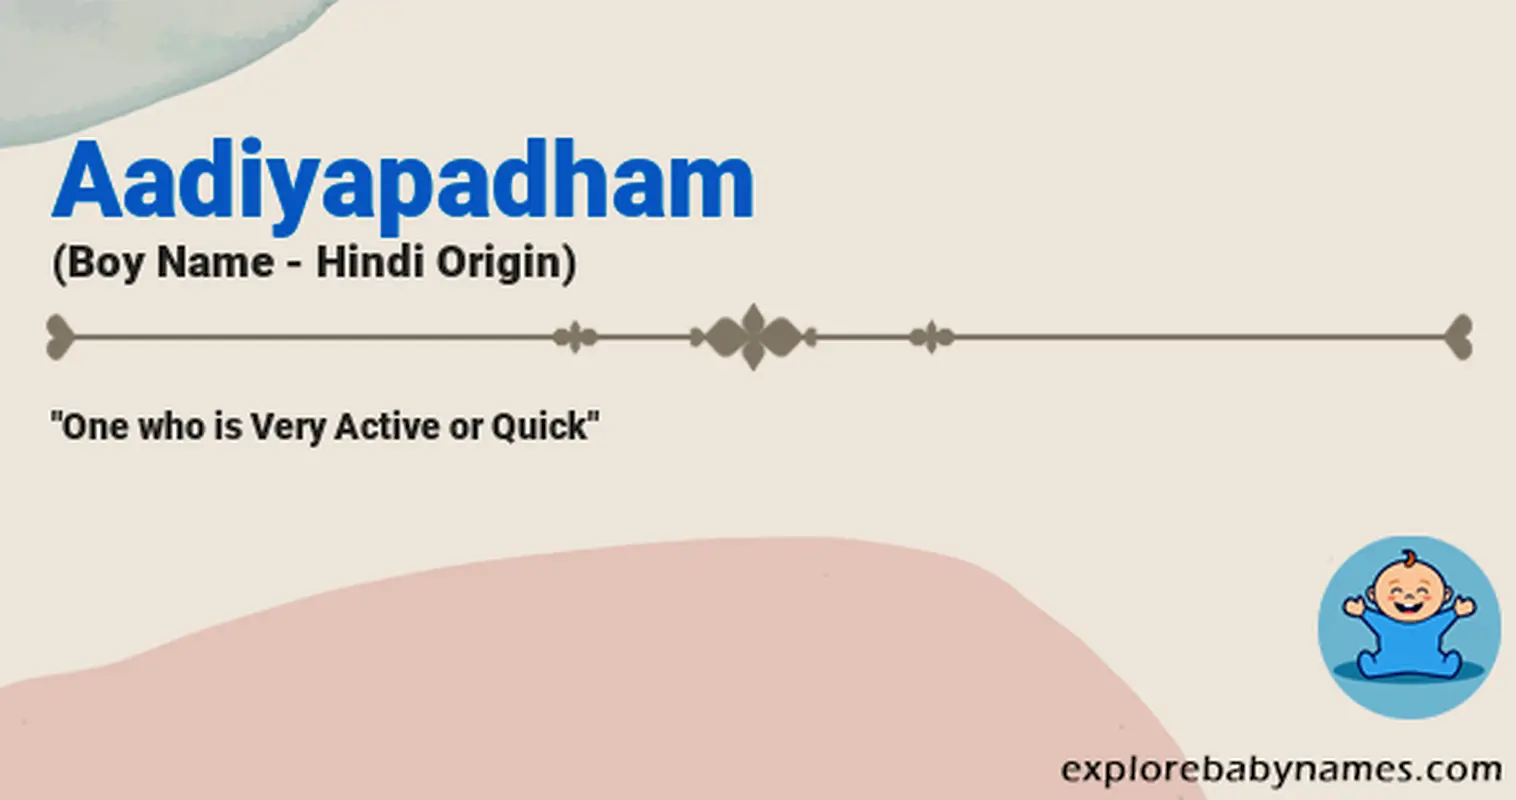 Meaning of Aadiyapadham